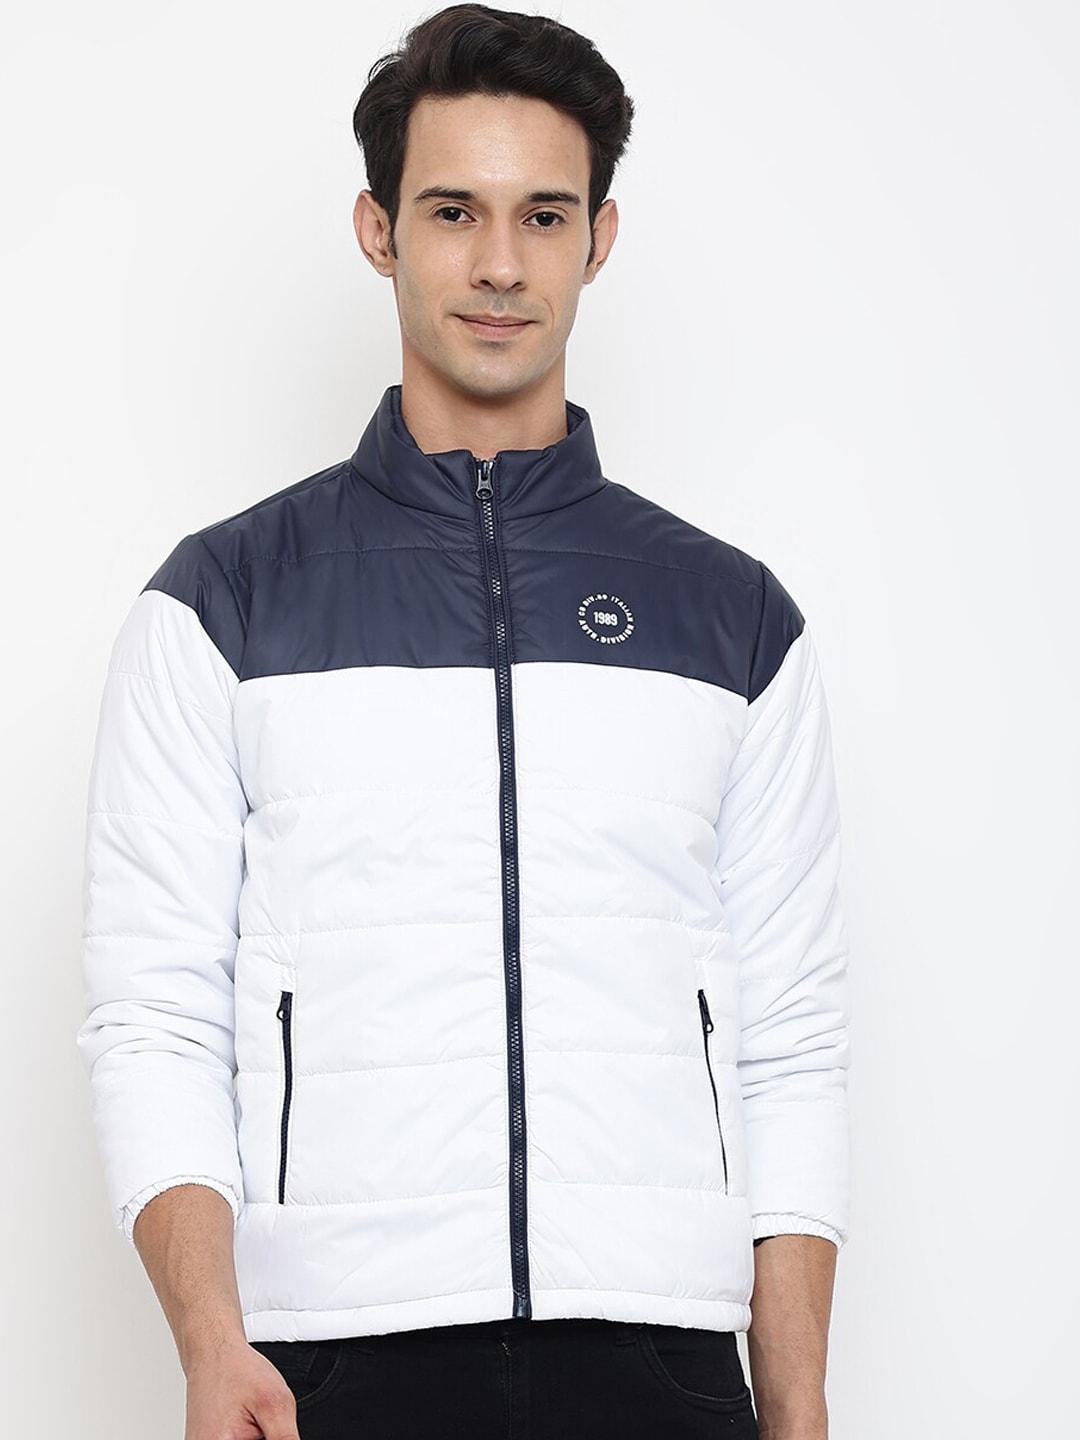 cantabil-men-white-&-navy-blue-colourblocked-sporty-jacket